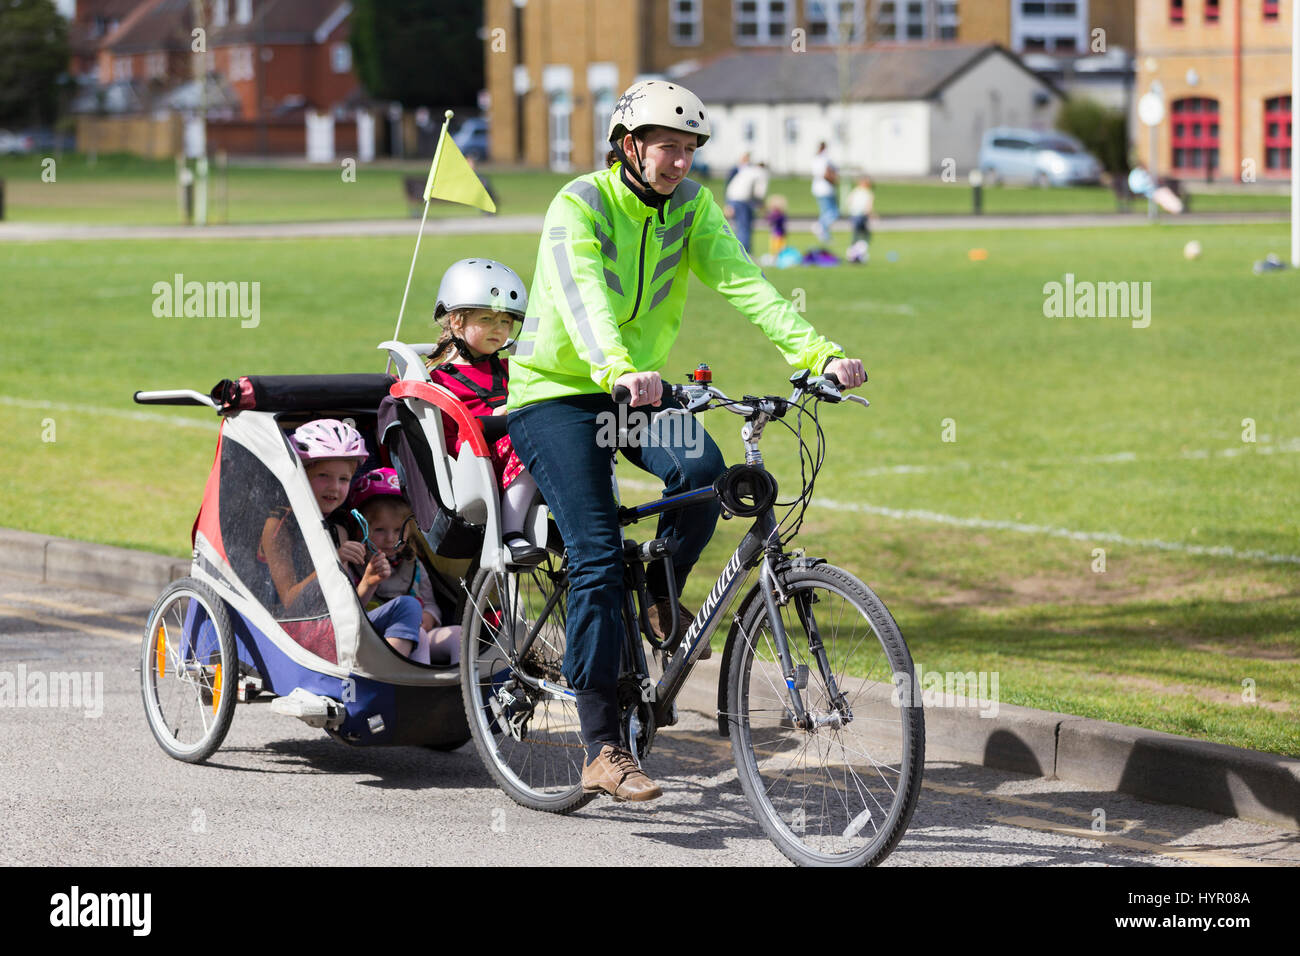 Cycliste femme sur Vélo / Vélo avec  + 3 enfants ; coopération avec siège enfant pilote casque & cycle remorquage remorque Chariot avec 2 / 2 enfants avec un casque. UK. Banque D'Images